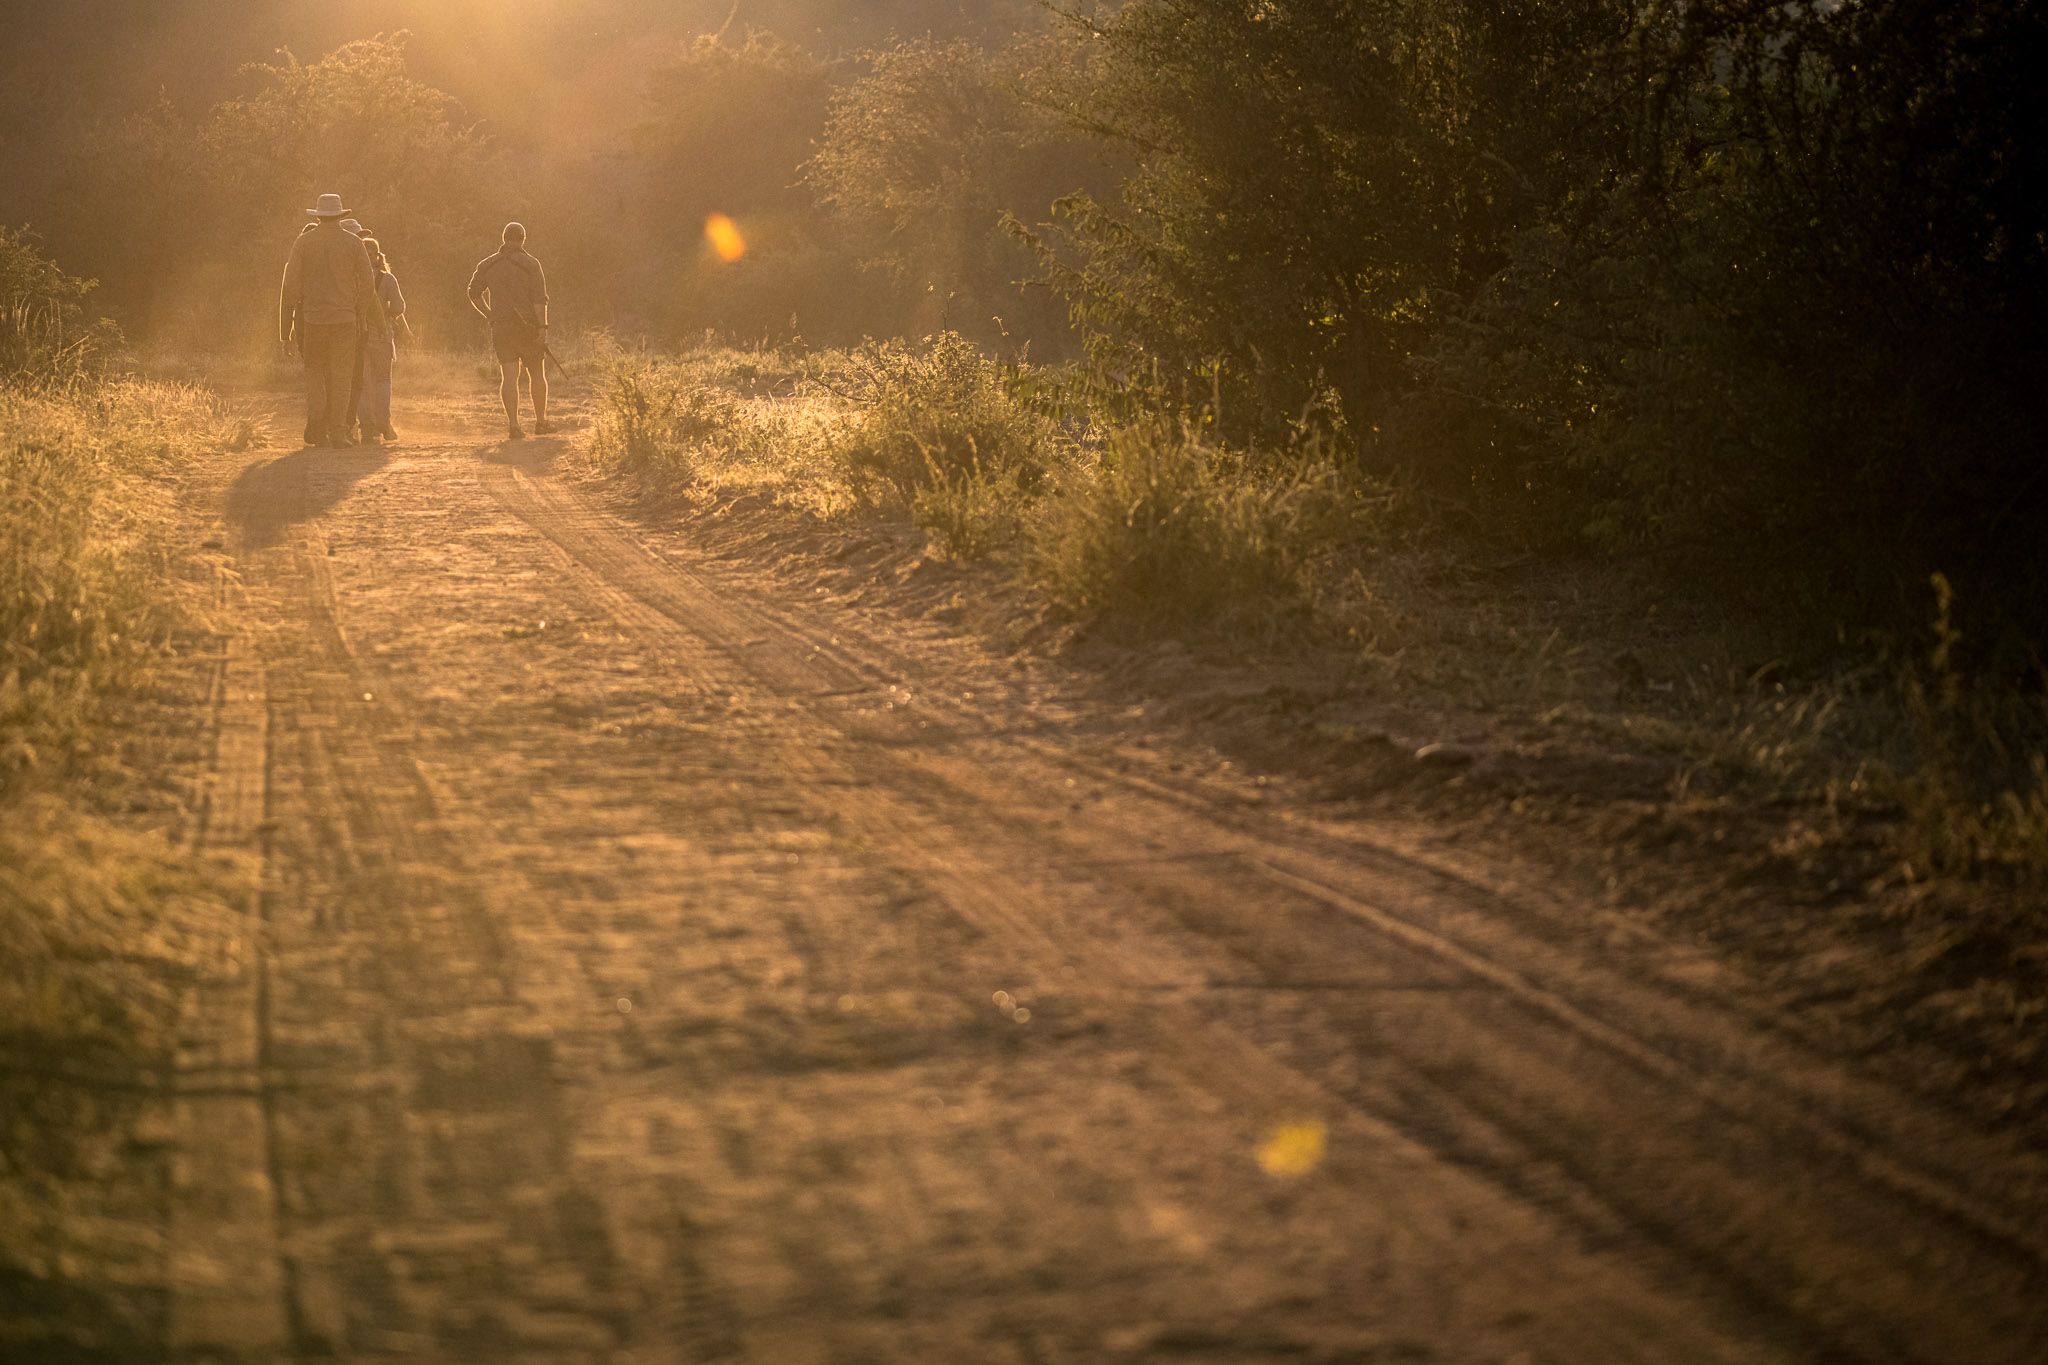 sunset walking safari in the bushveld